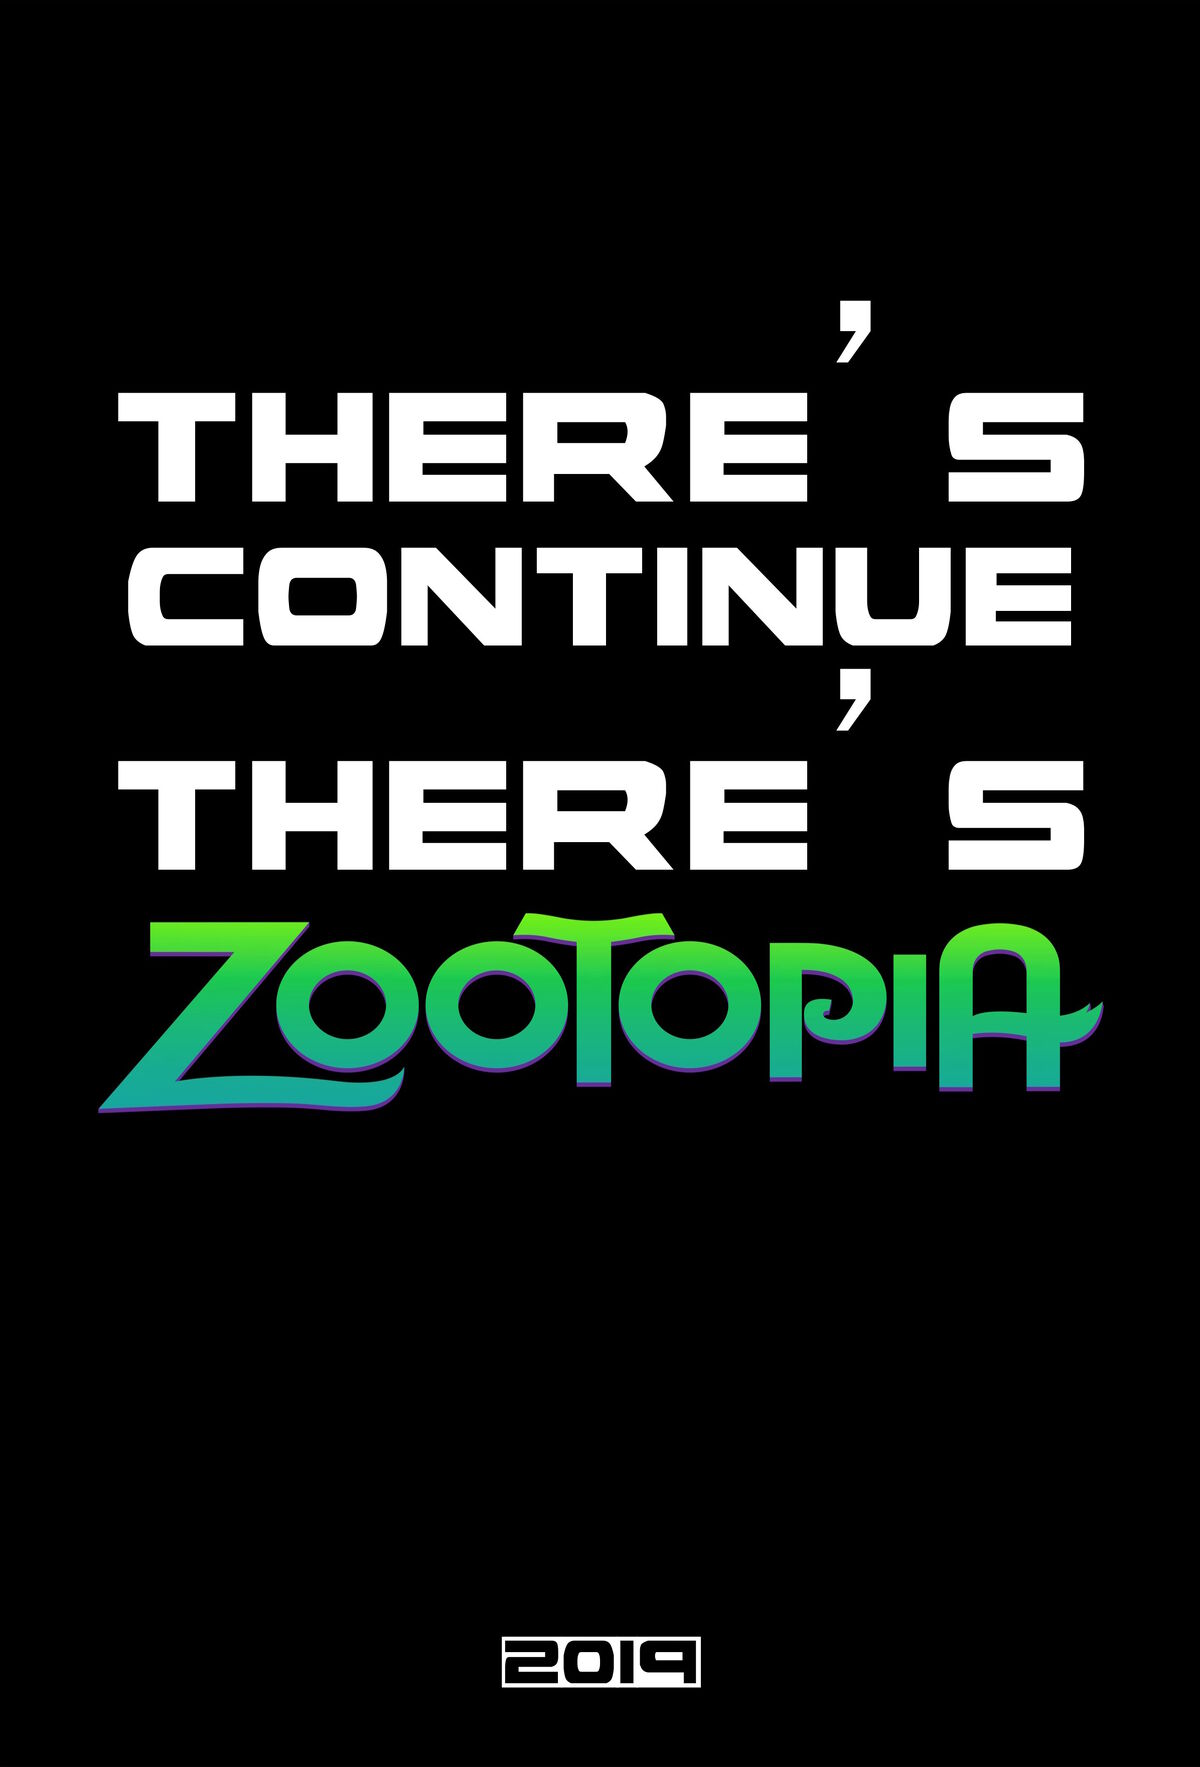 zootopia 2 trailer teaser filme movie sequel tudo sobre 